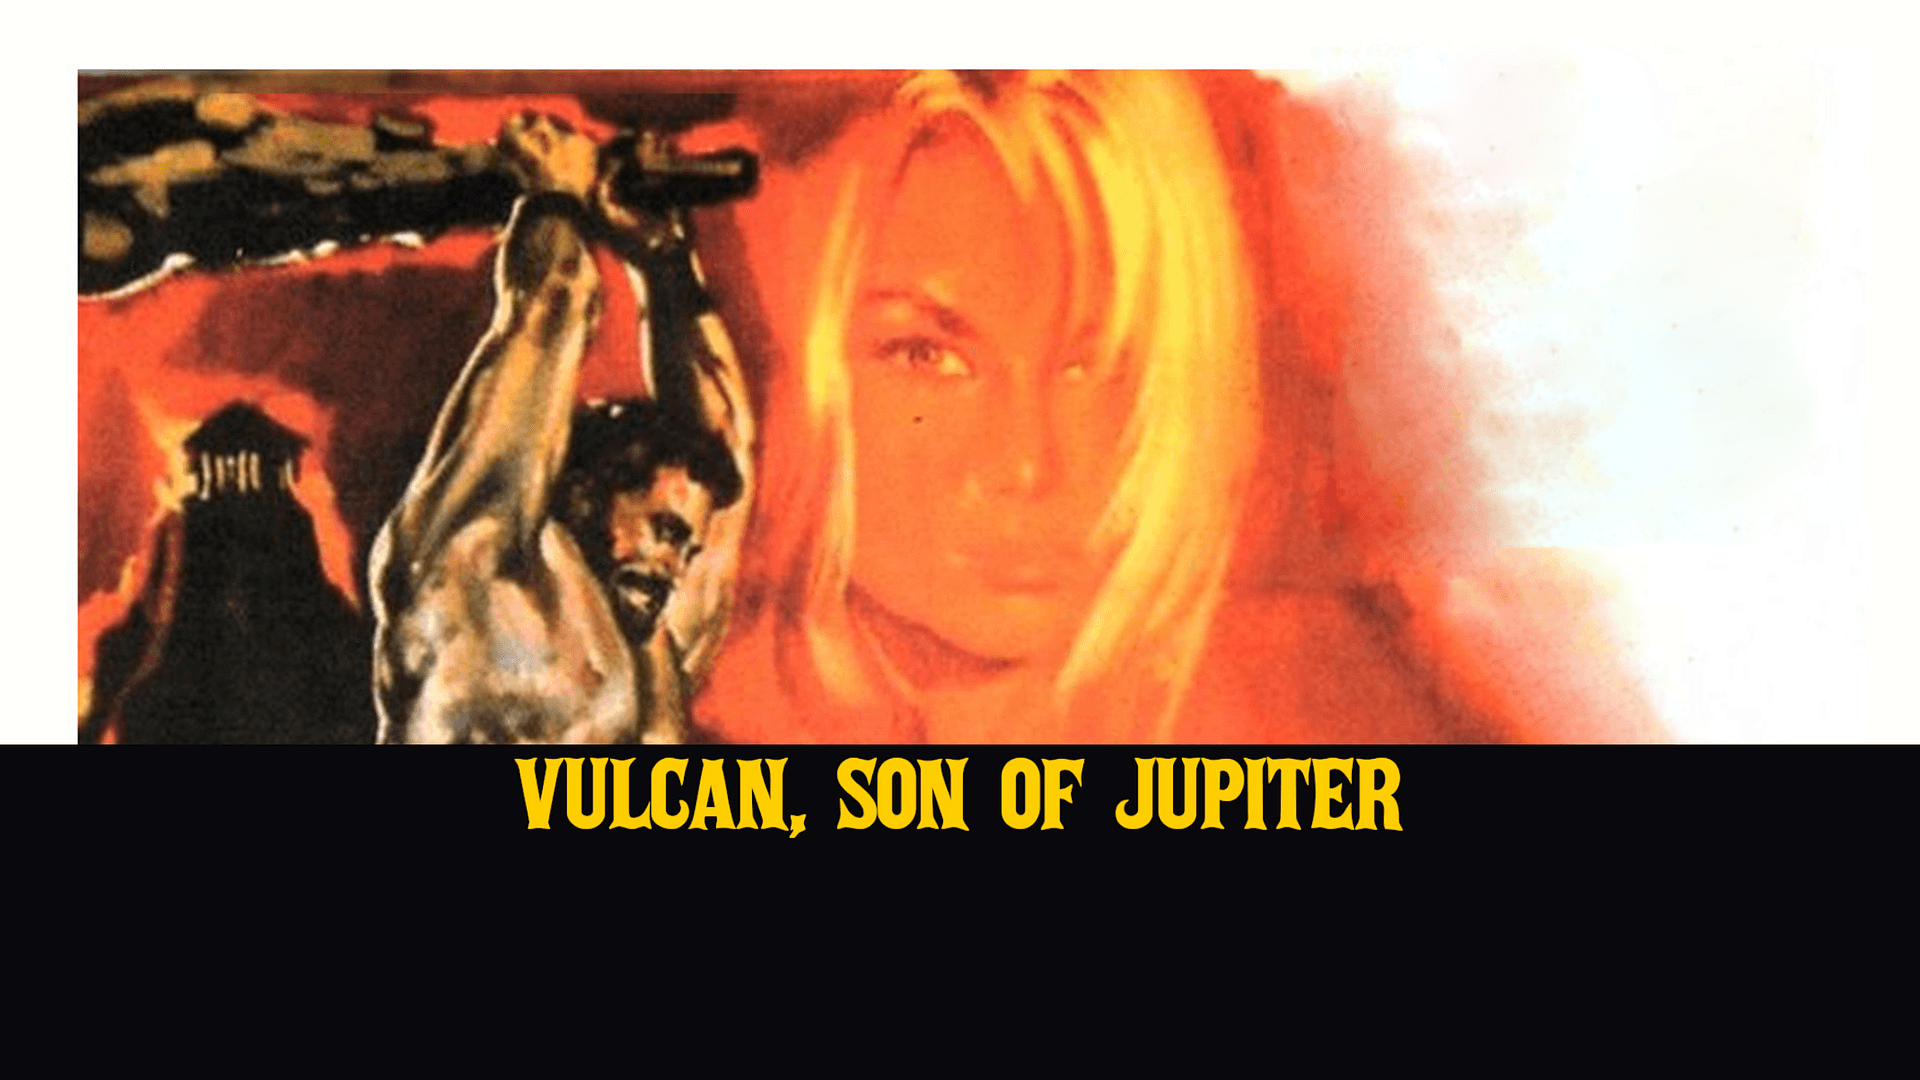 Vulcan son of Jupiter